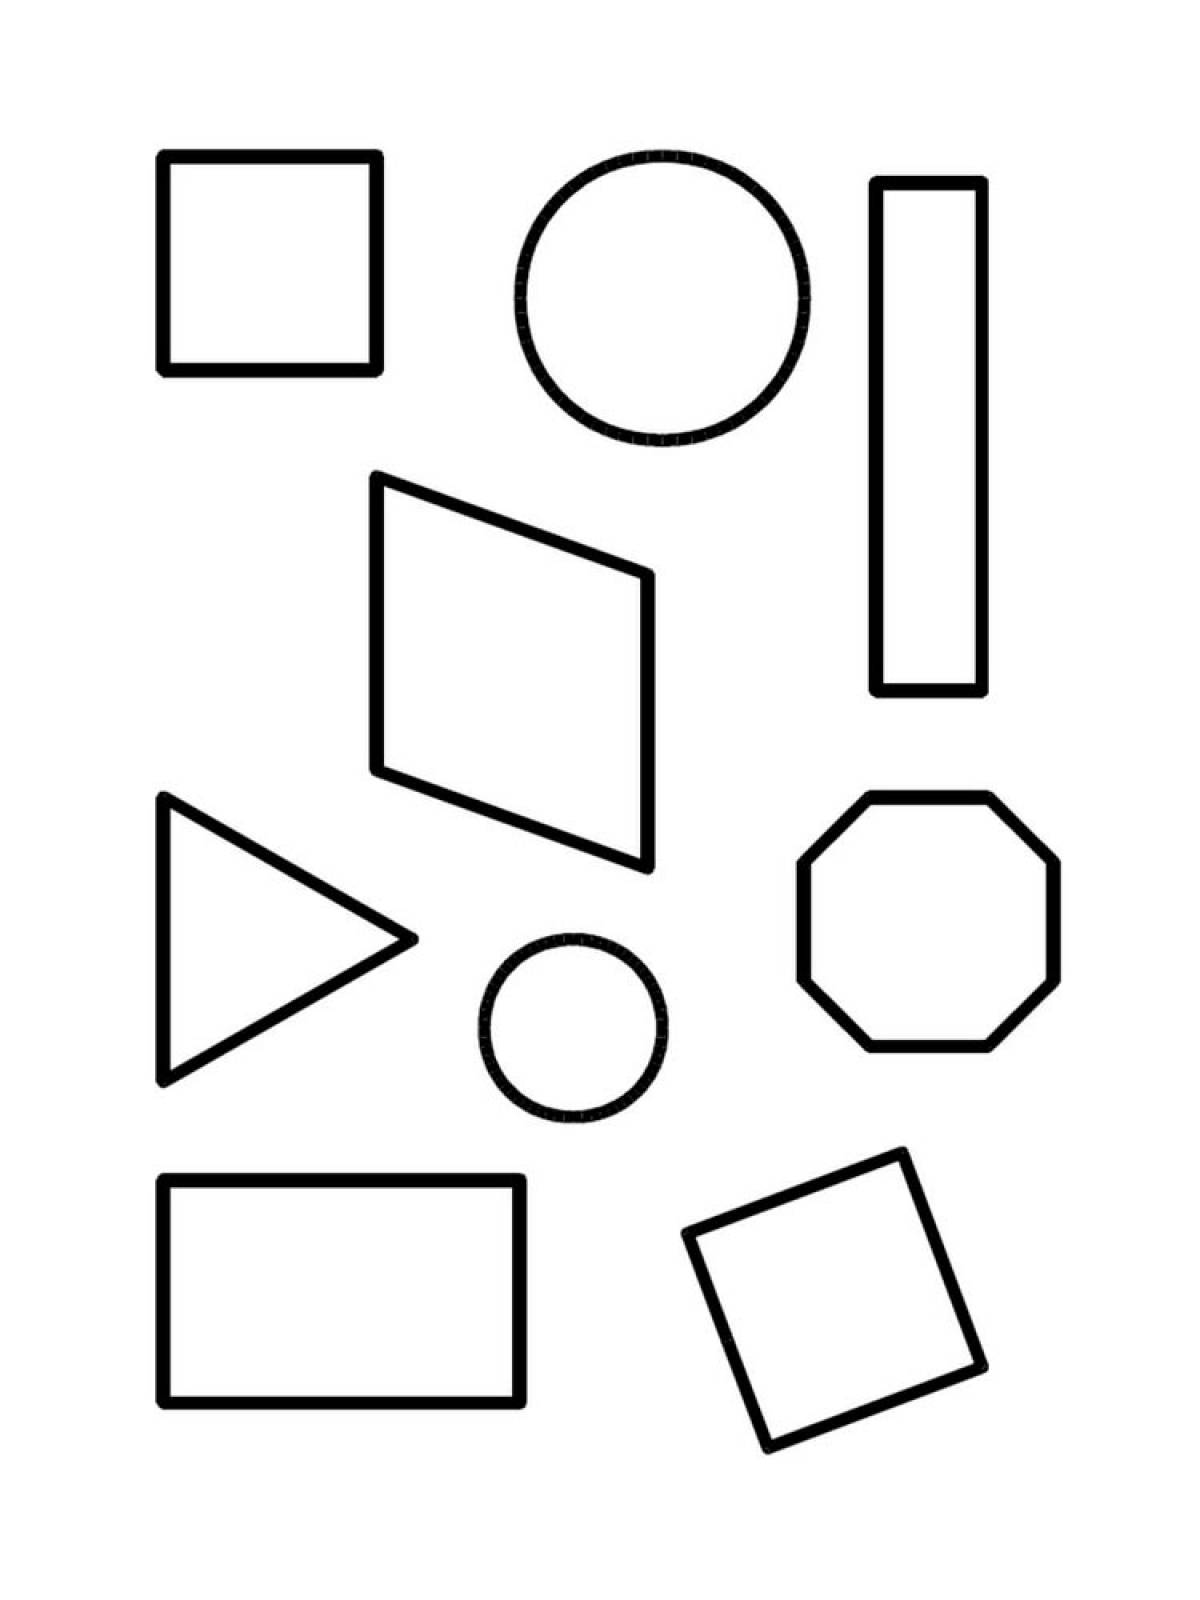 Geometric shapes 24